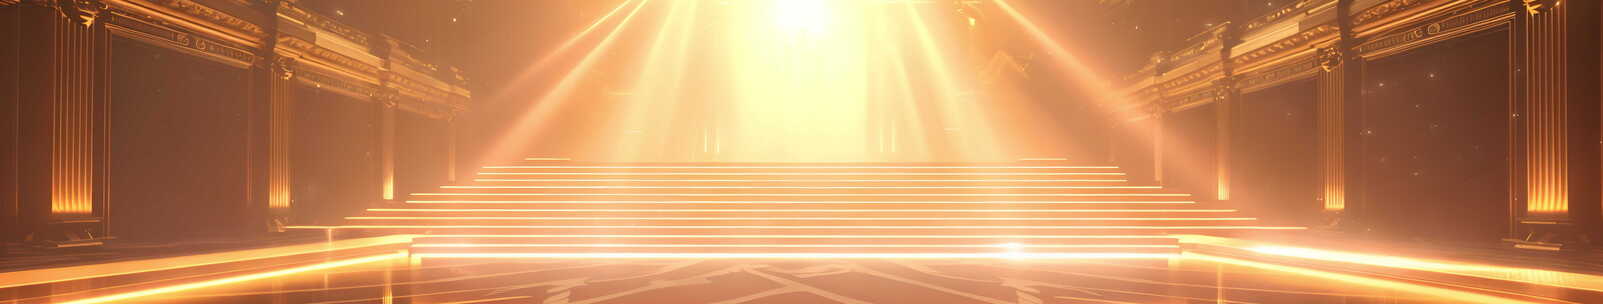 金碧辉煌的颁奖舞台大气开场超宽LED背景